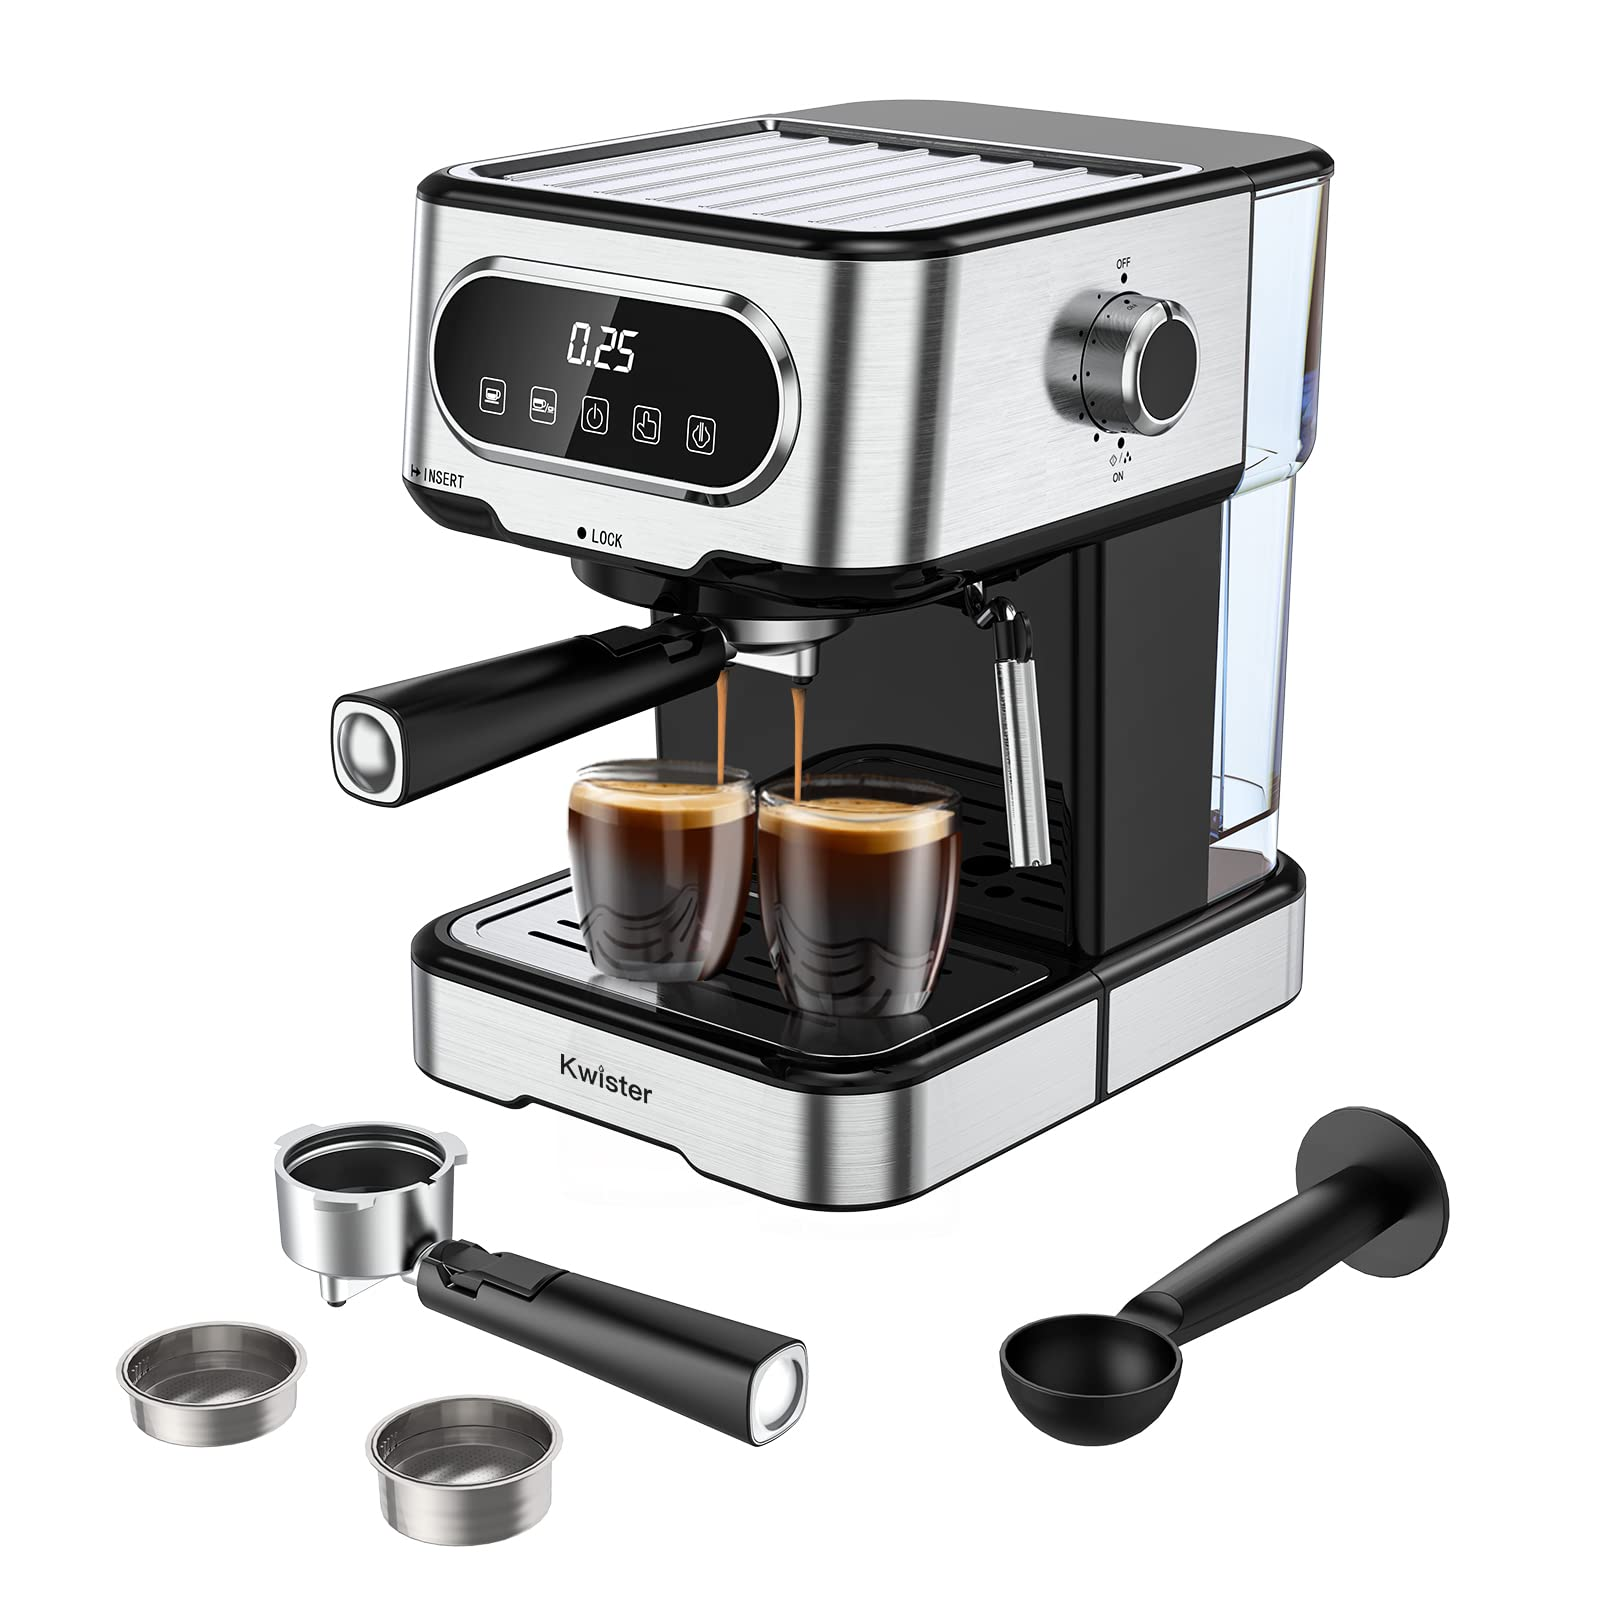 Kwister Espresso Machine 15 Bar